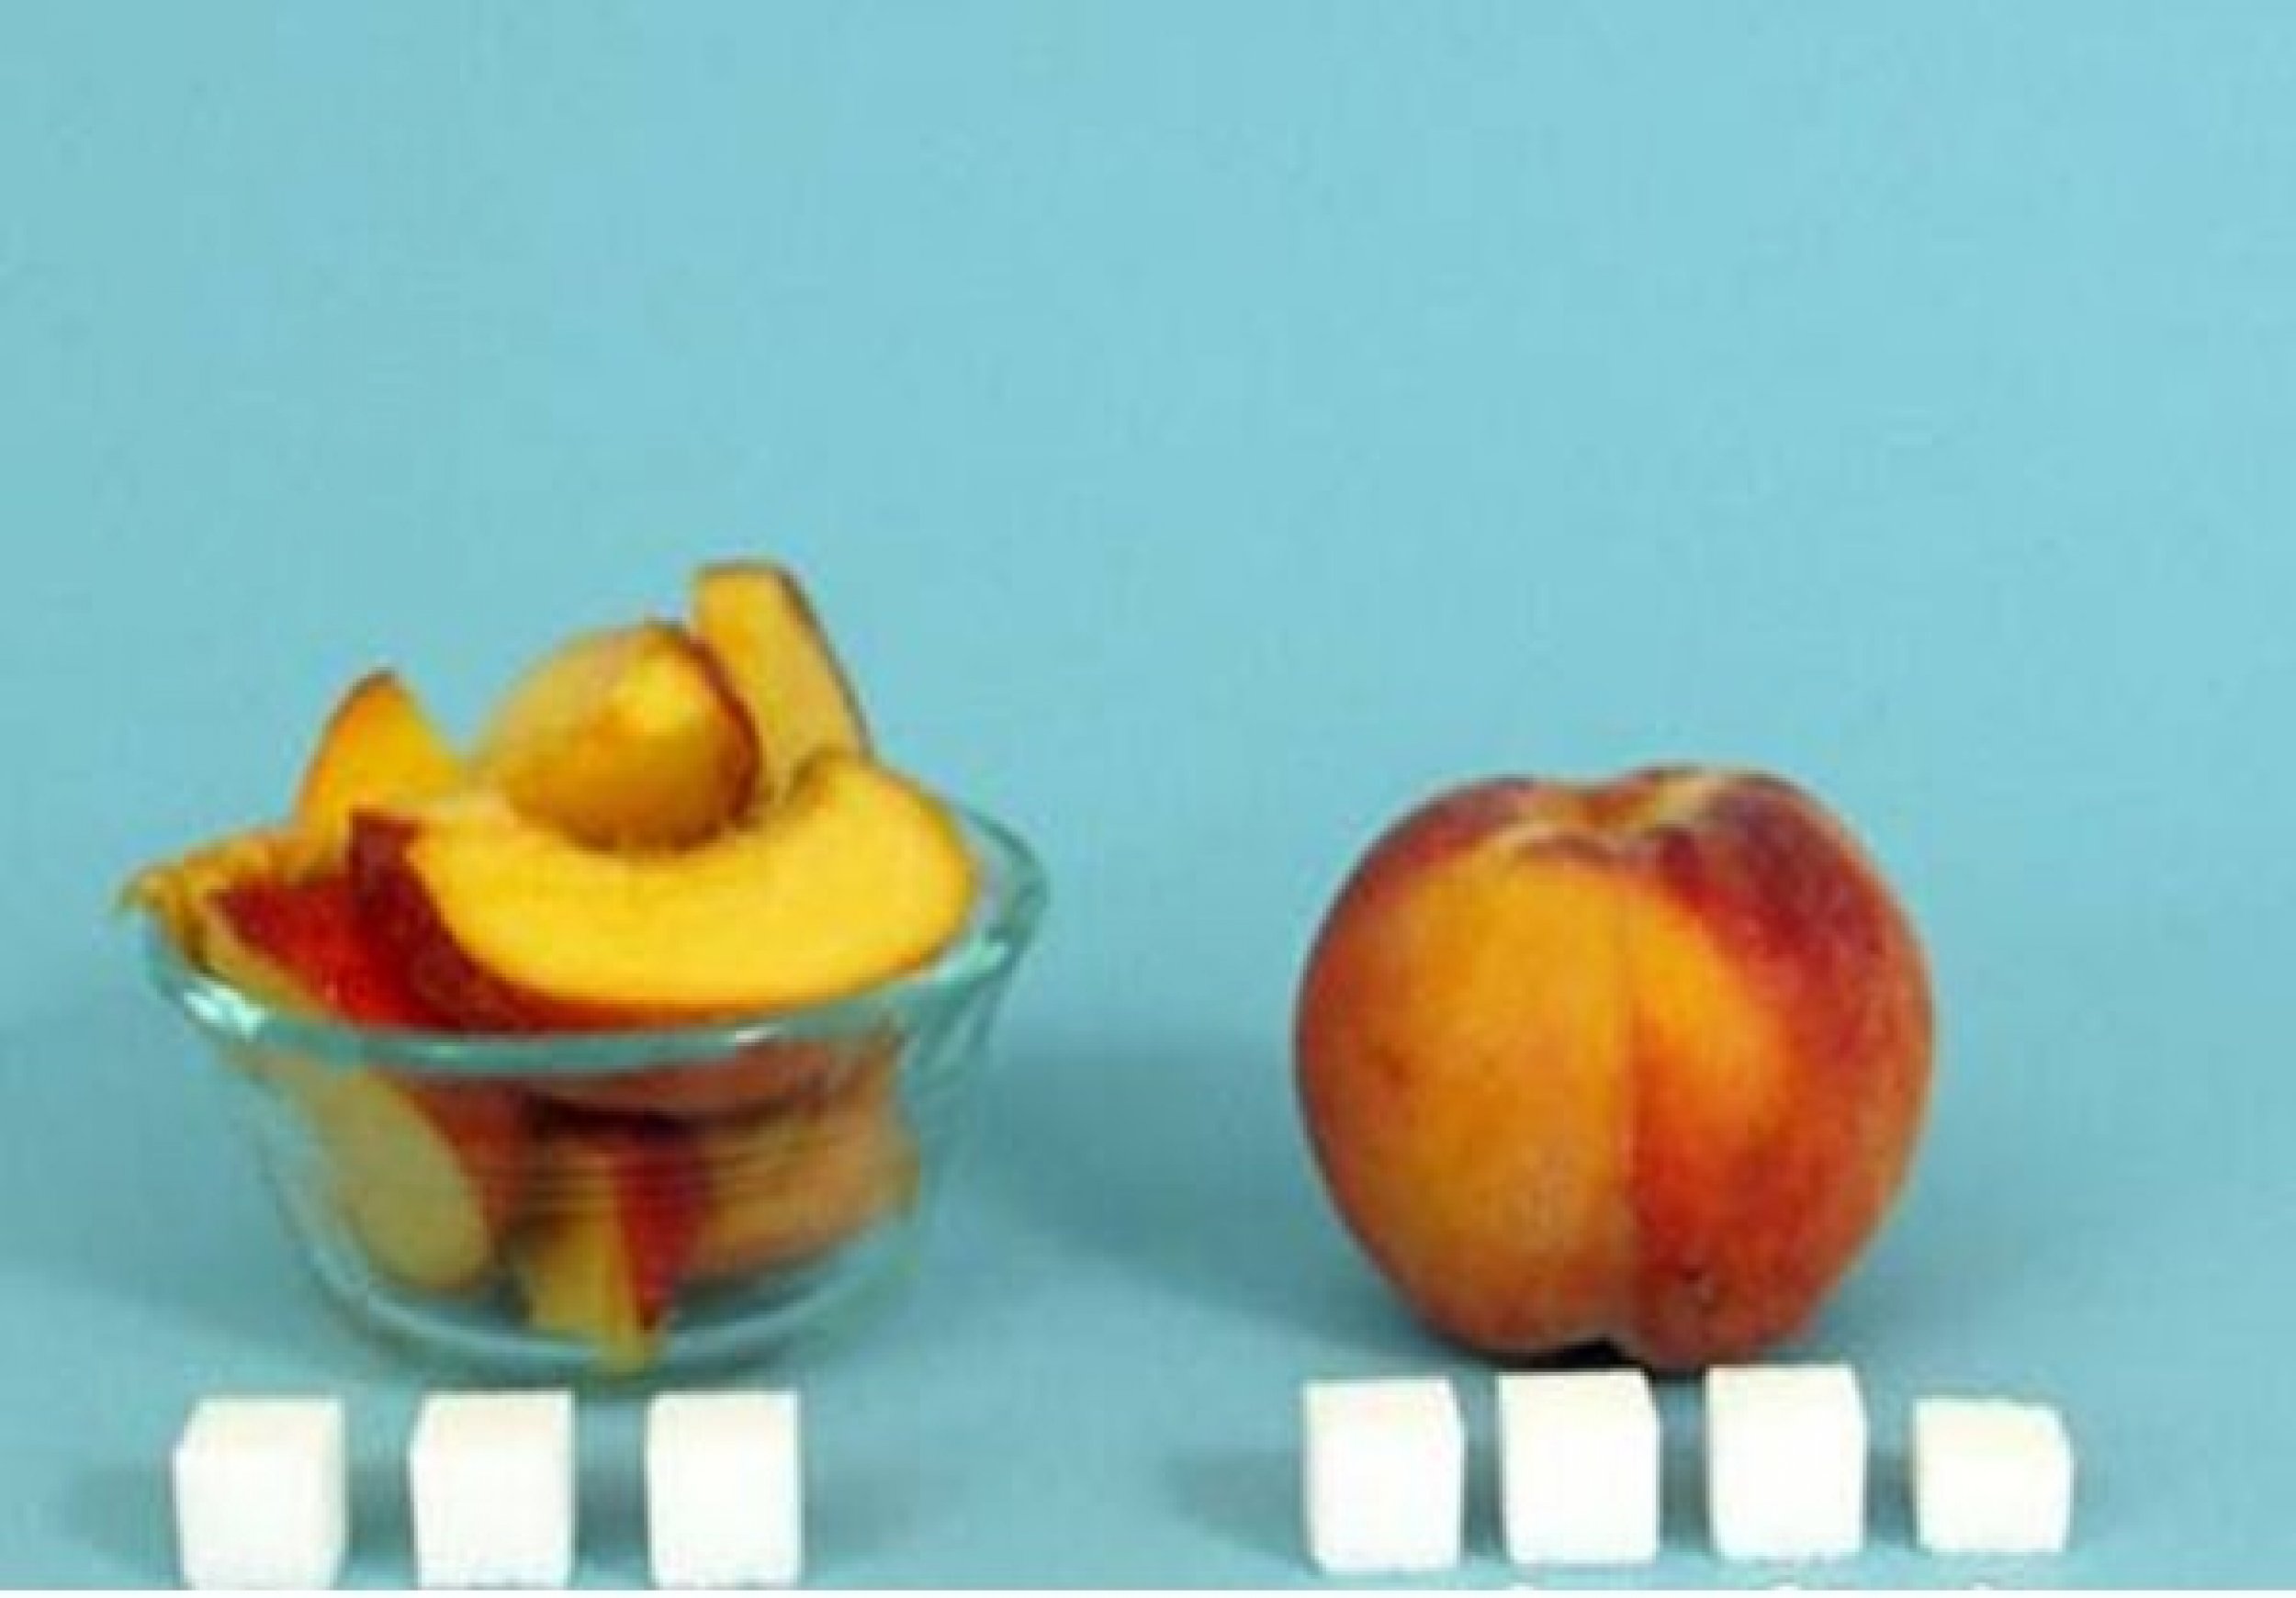 2 11 всех фруктов составляют персики. Сахара в яблоке. Количество сахара в персиках. Количество сахара в яблоке. Персик с сахаром.